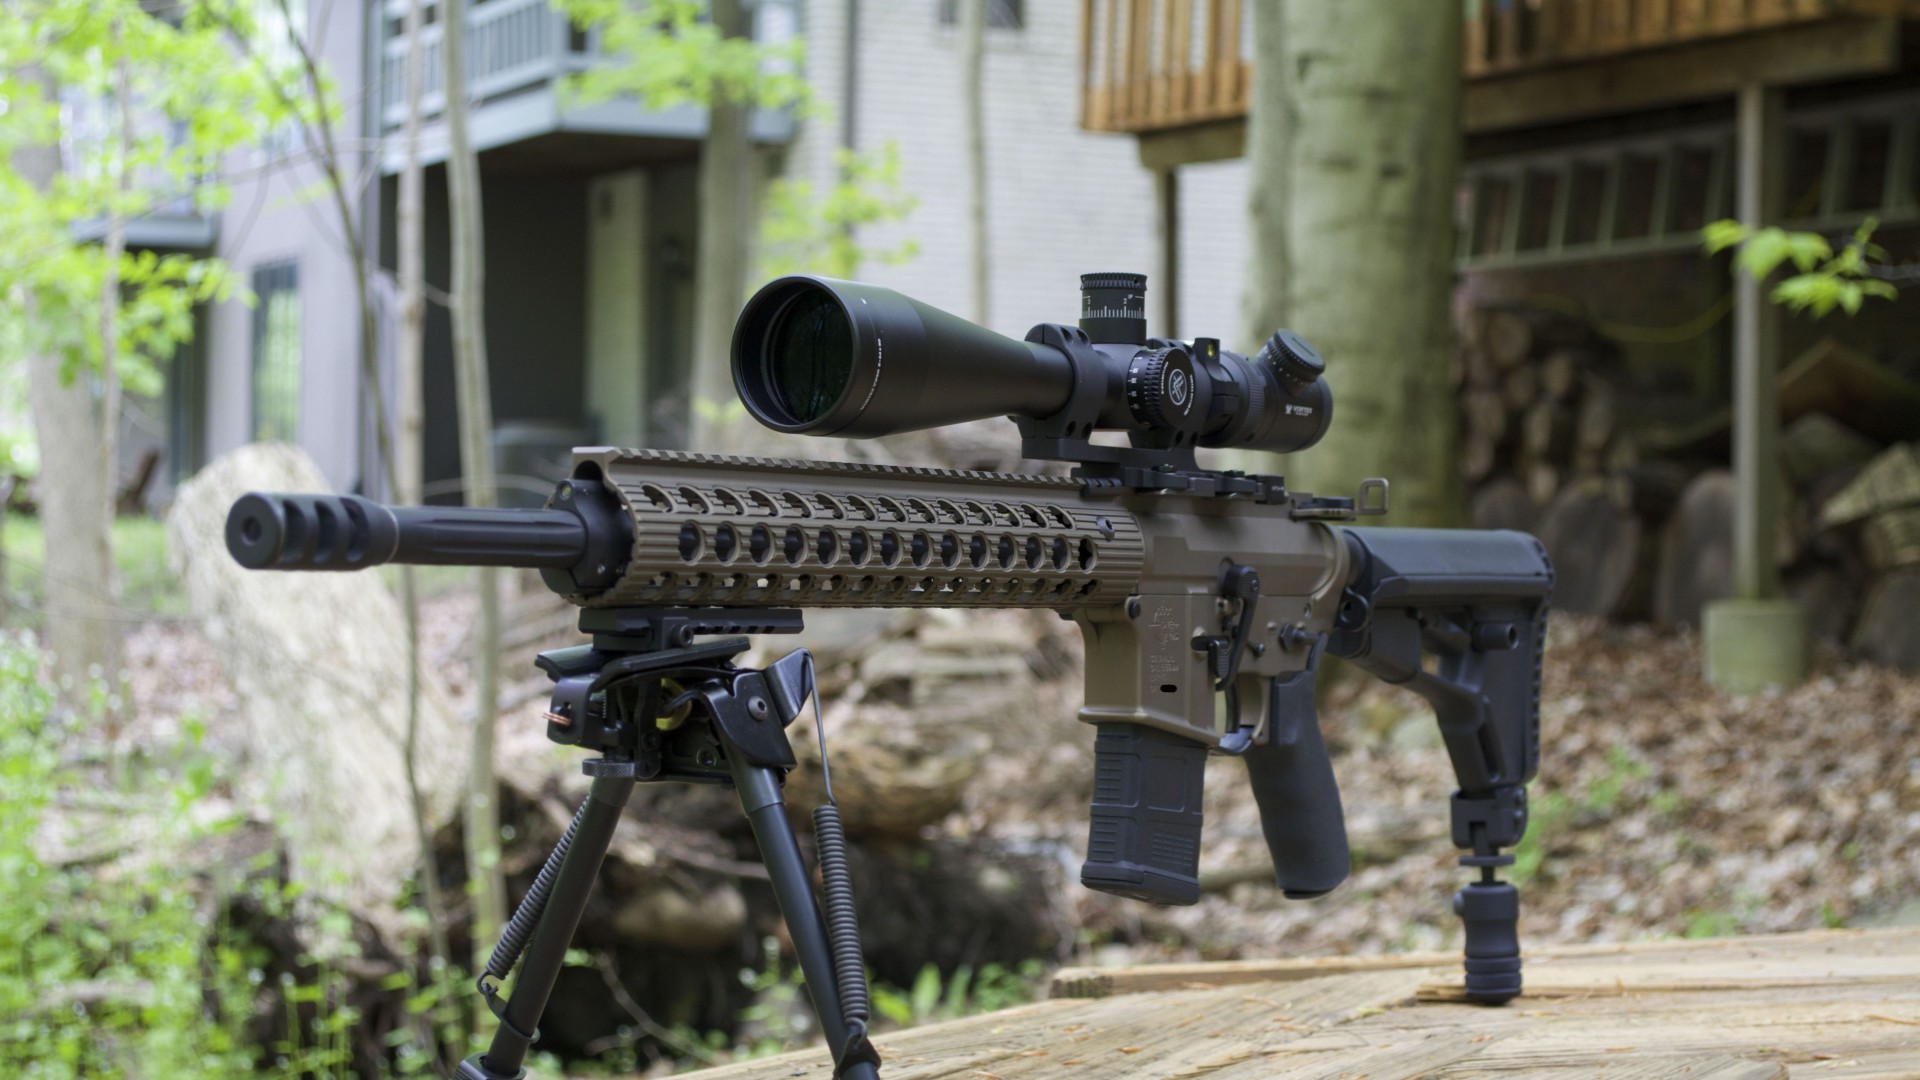 винтовка, АР-15, камуфляж, аммуниция, AR-15, rifle, custom, semi-automatic, multicam, camo, scope (horizontal)